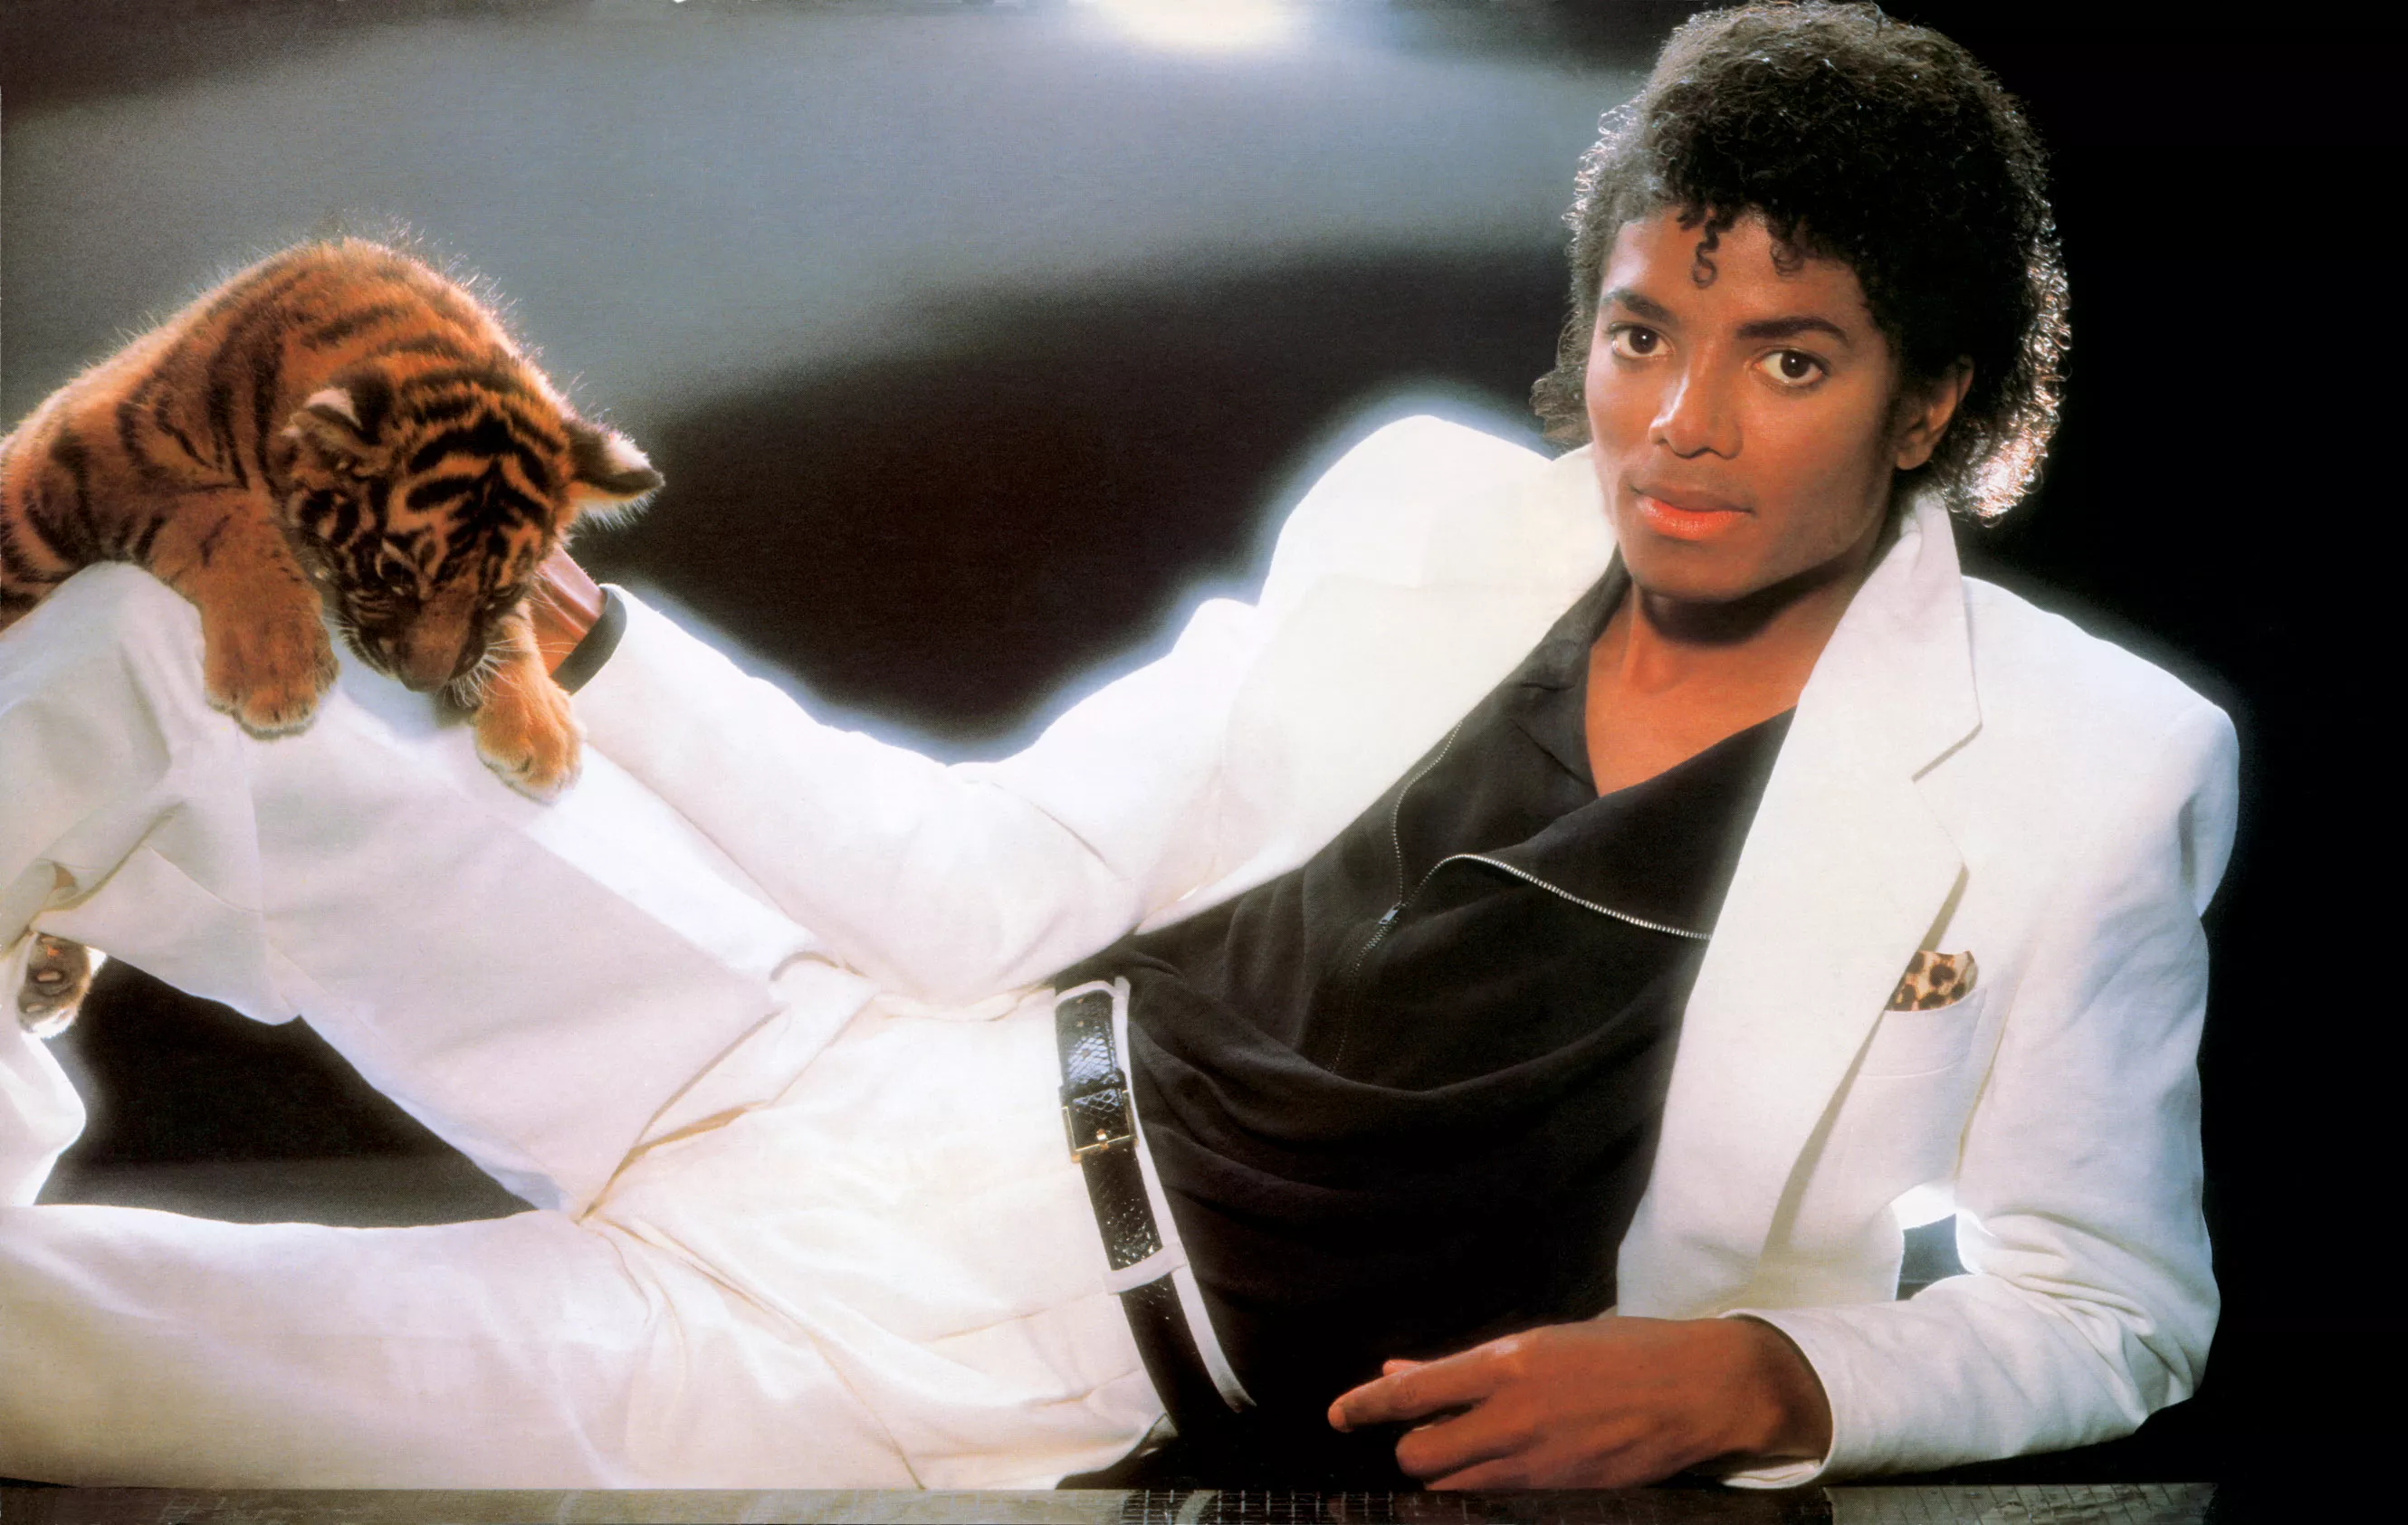 Se trailern från den omtvistade Michael Jackson-dokumentären